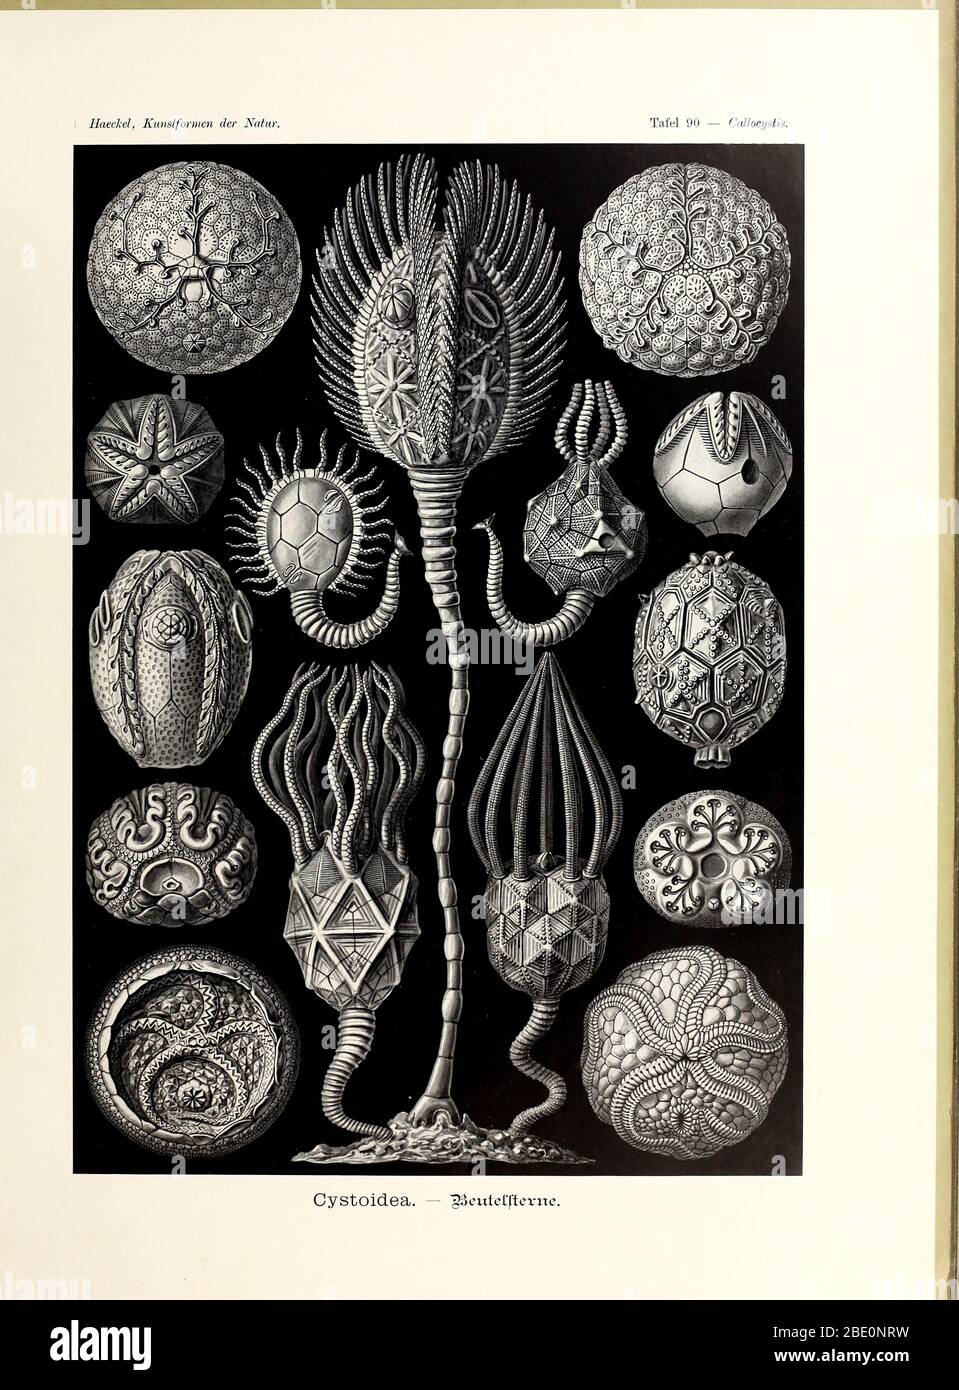 cystoidea beutellterne from Ernst Haeckel's Kunstformen der Natur, 1904 Stock Photo